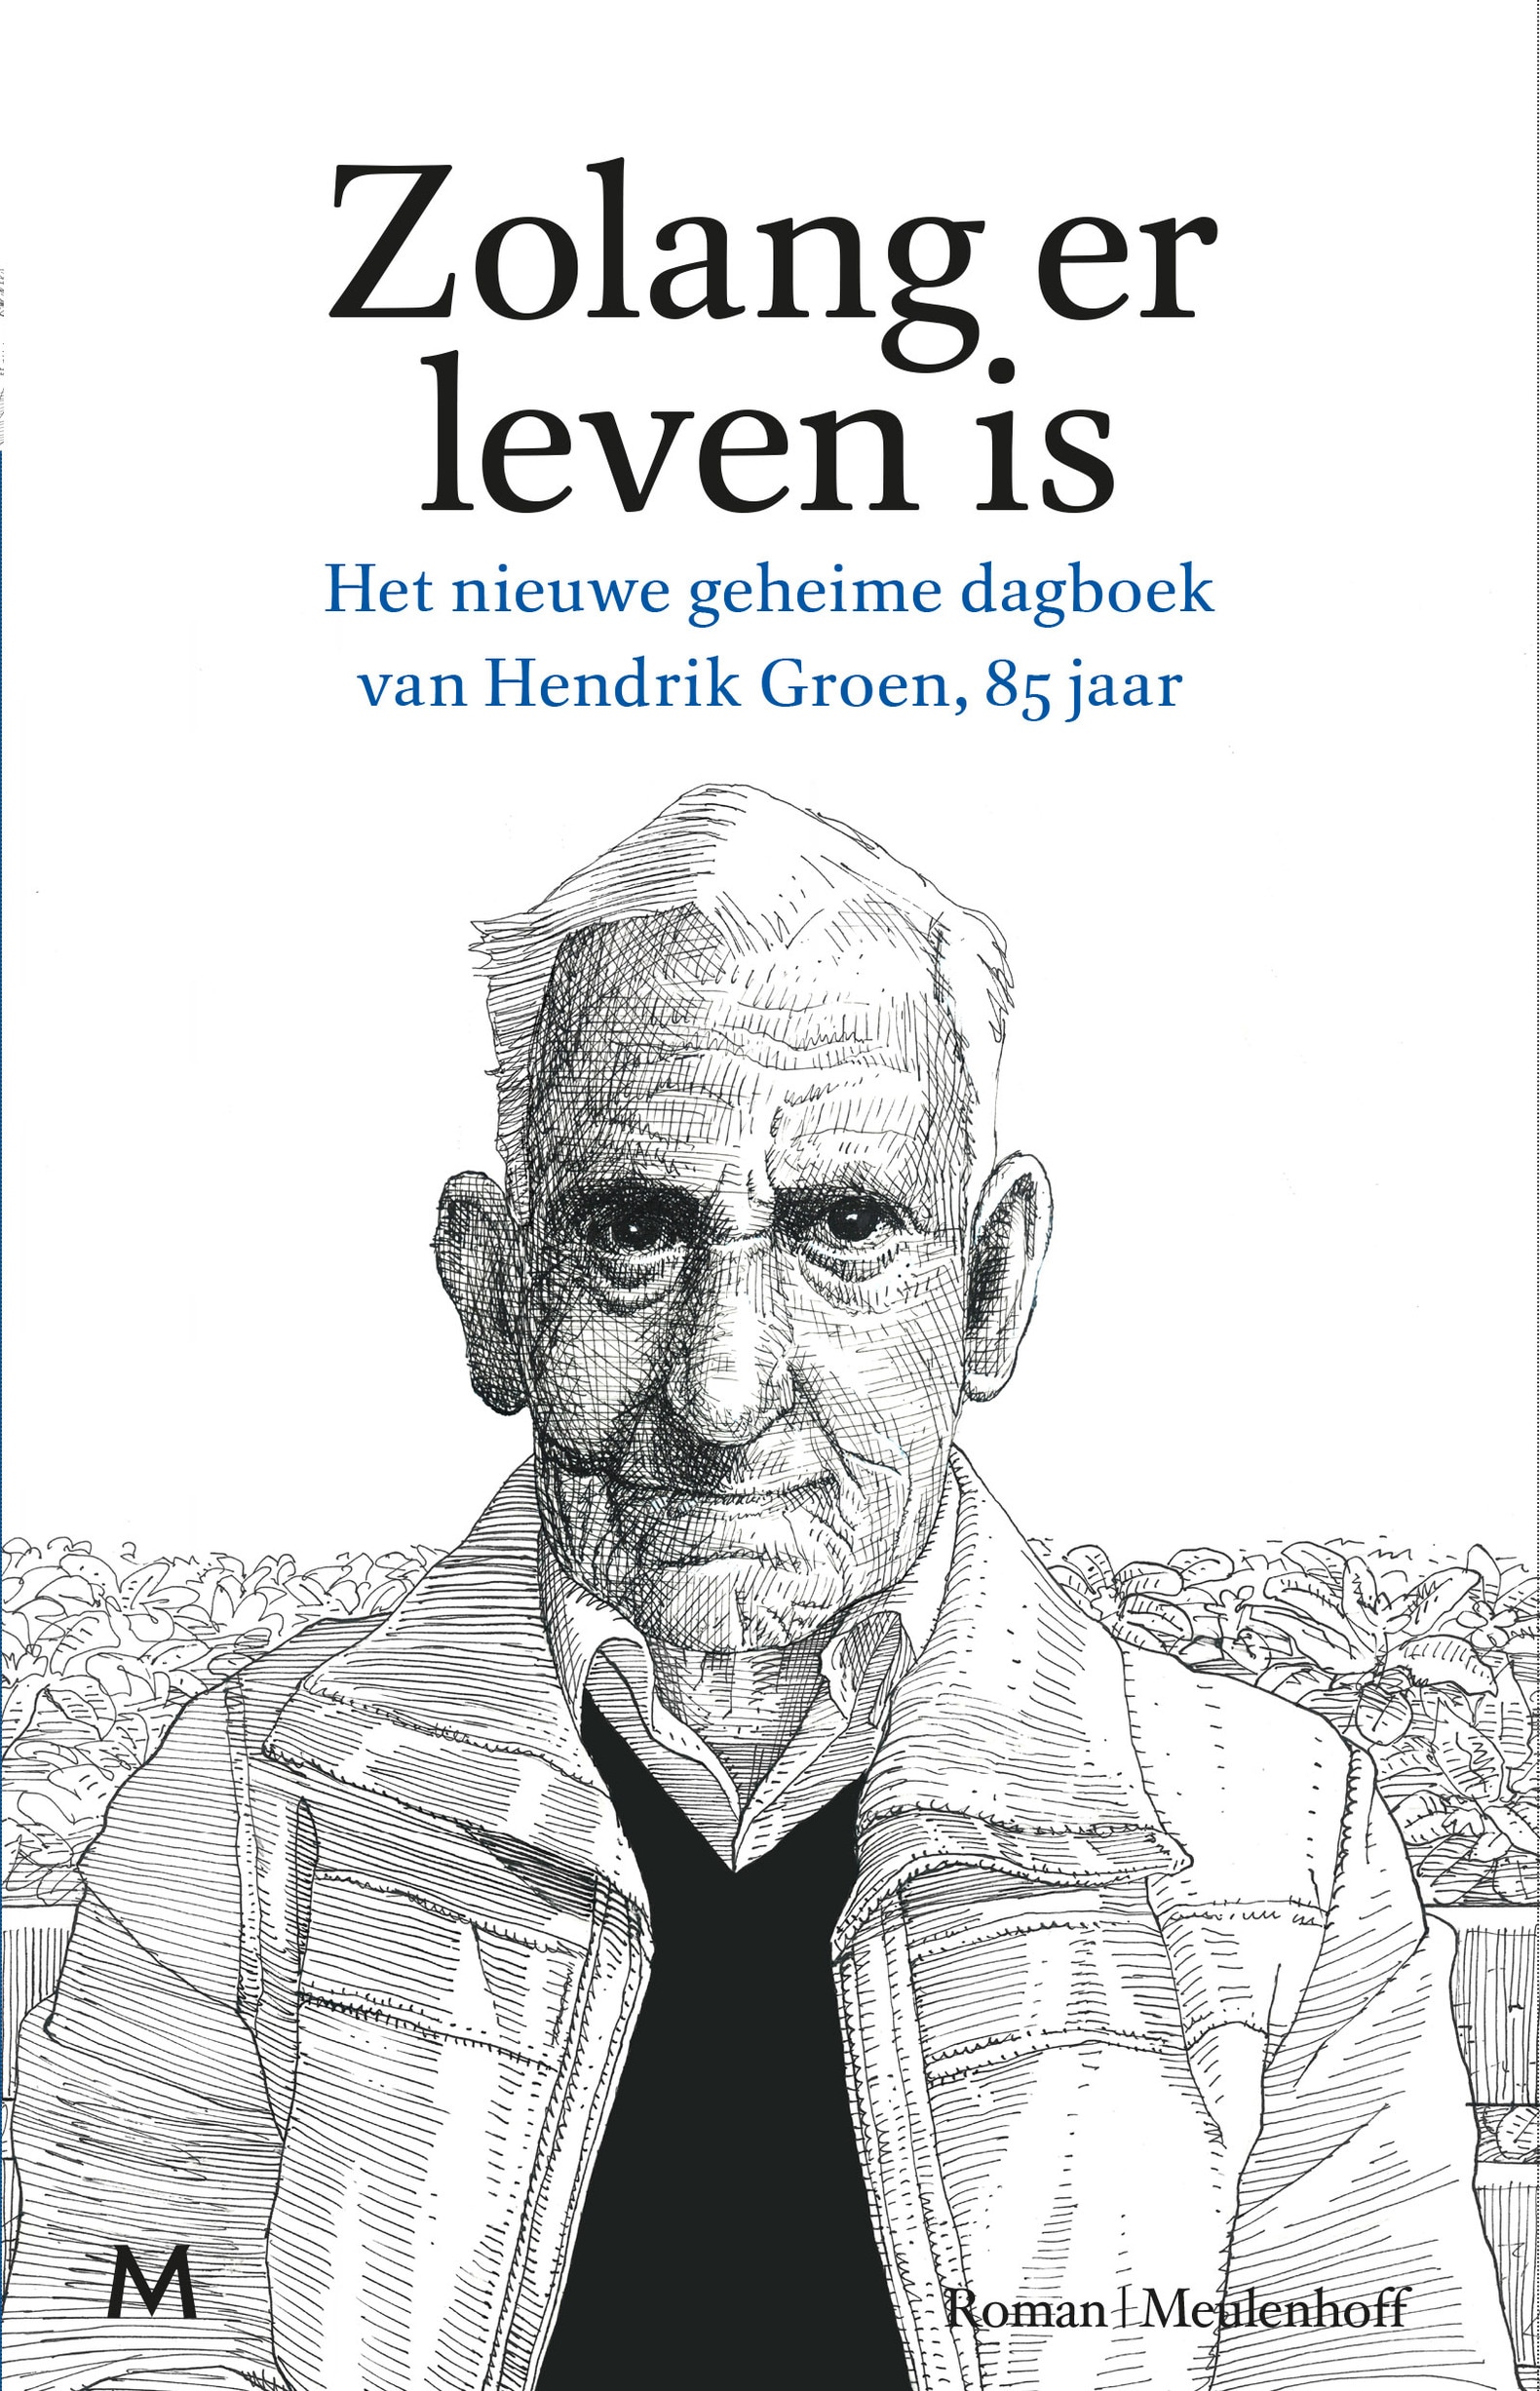 Hendrik Groen is niet alleen niet oud, hij is ook niet echt